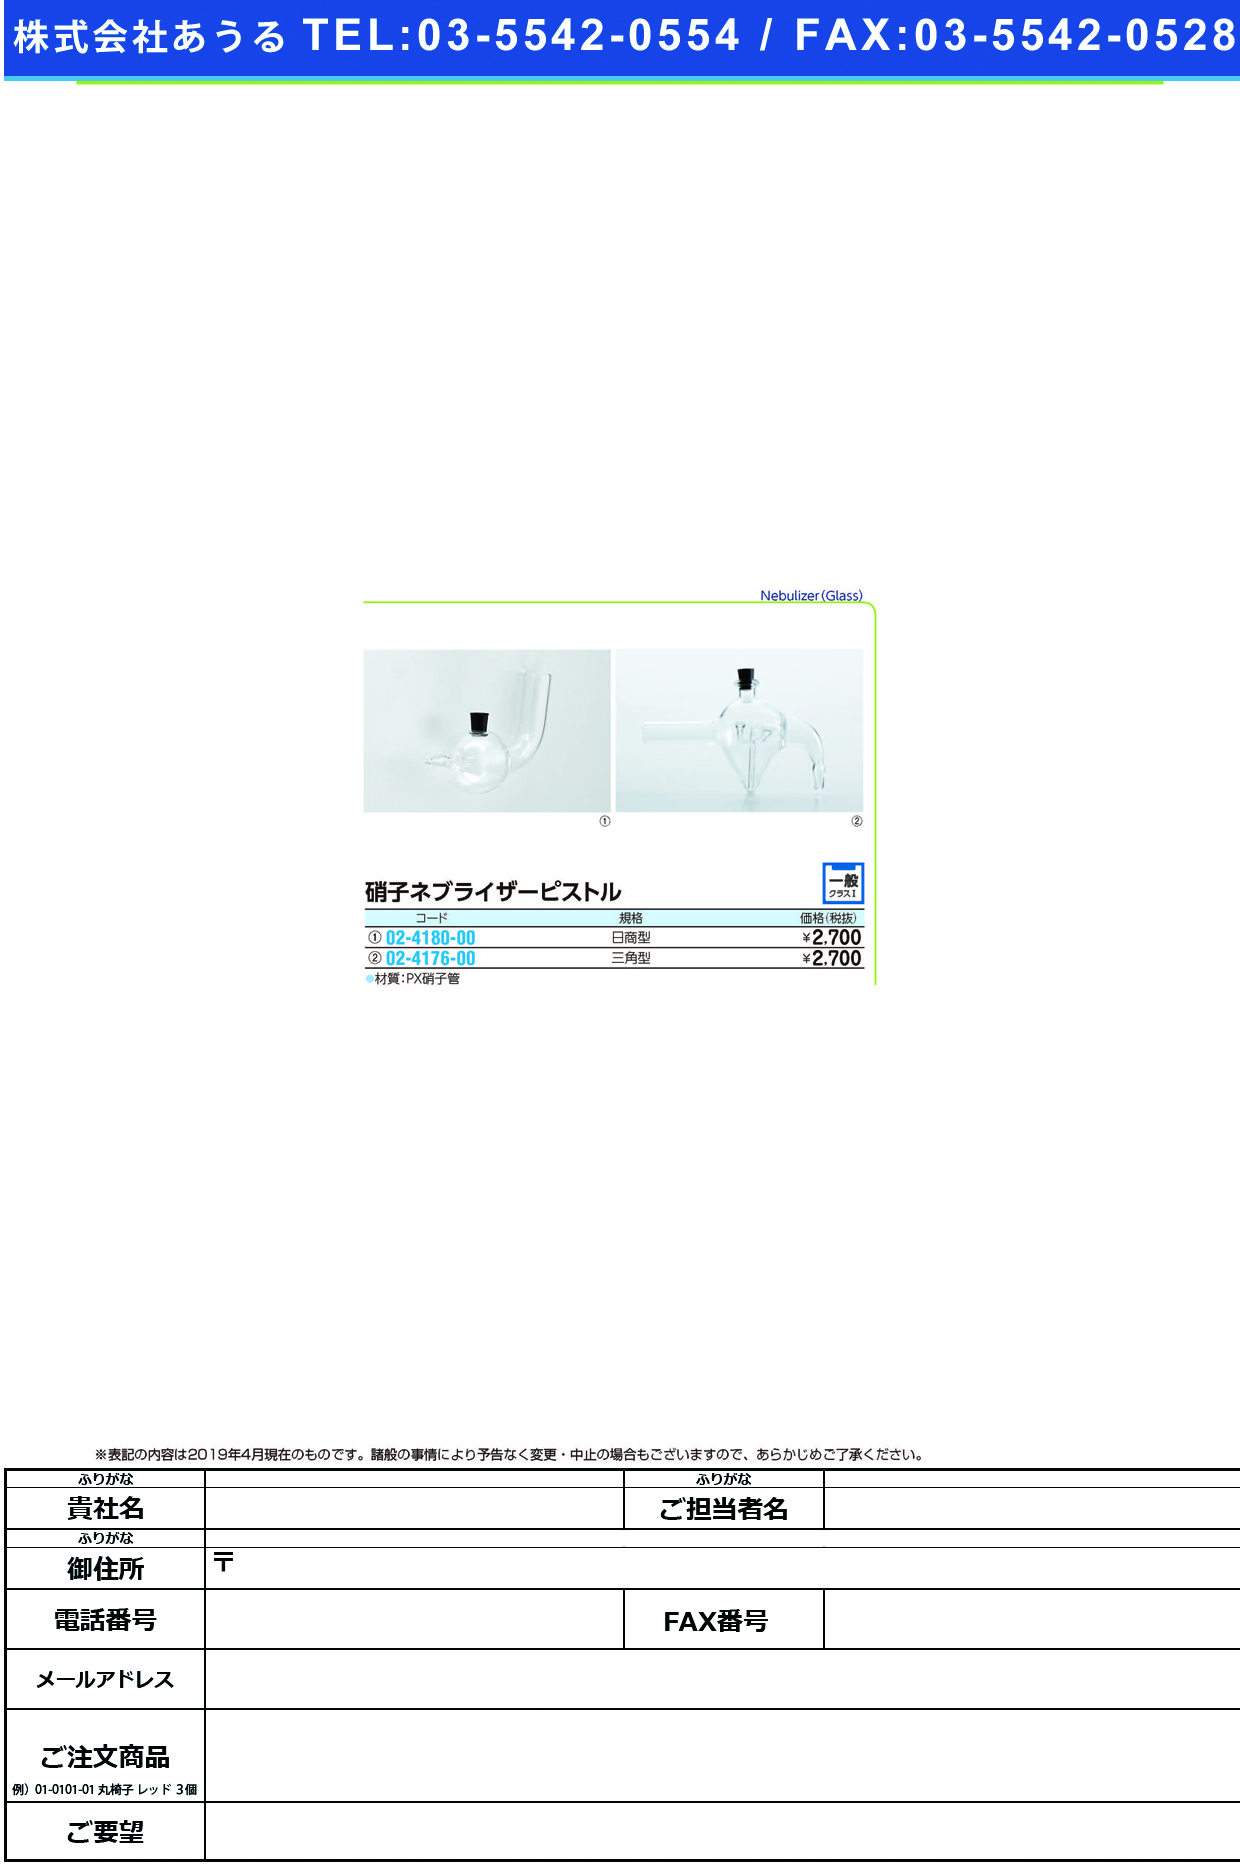 (02-4180-00)硝子ネブライザーピストル（日商型） Lｶﾞﾀ ﾈﾌﾞﾗｲｻﾞｰﾋﾟｽﾄﾙ(ﾆｯｼｮｳ)【1個単位】【2019年カタログ商品】